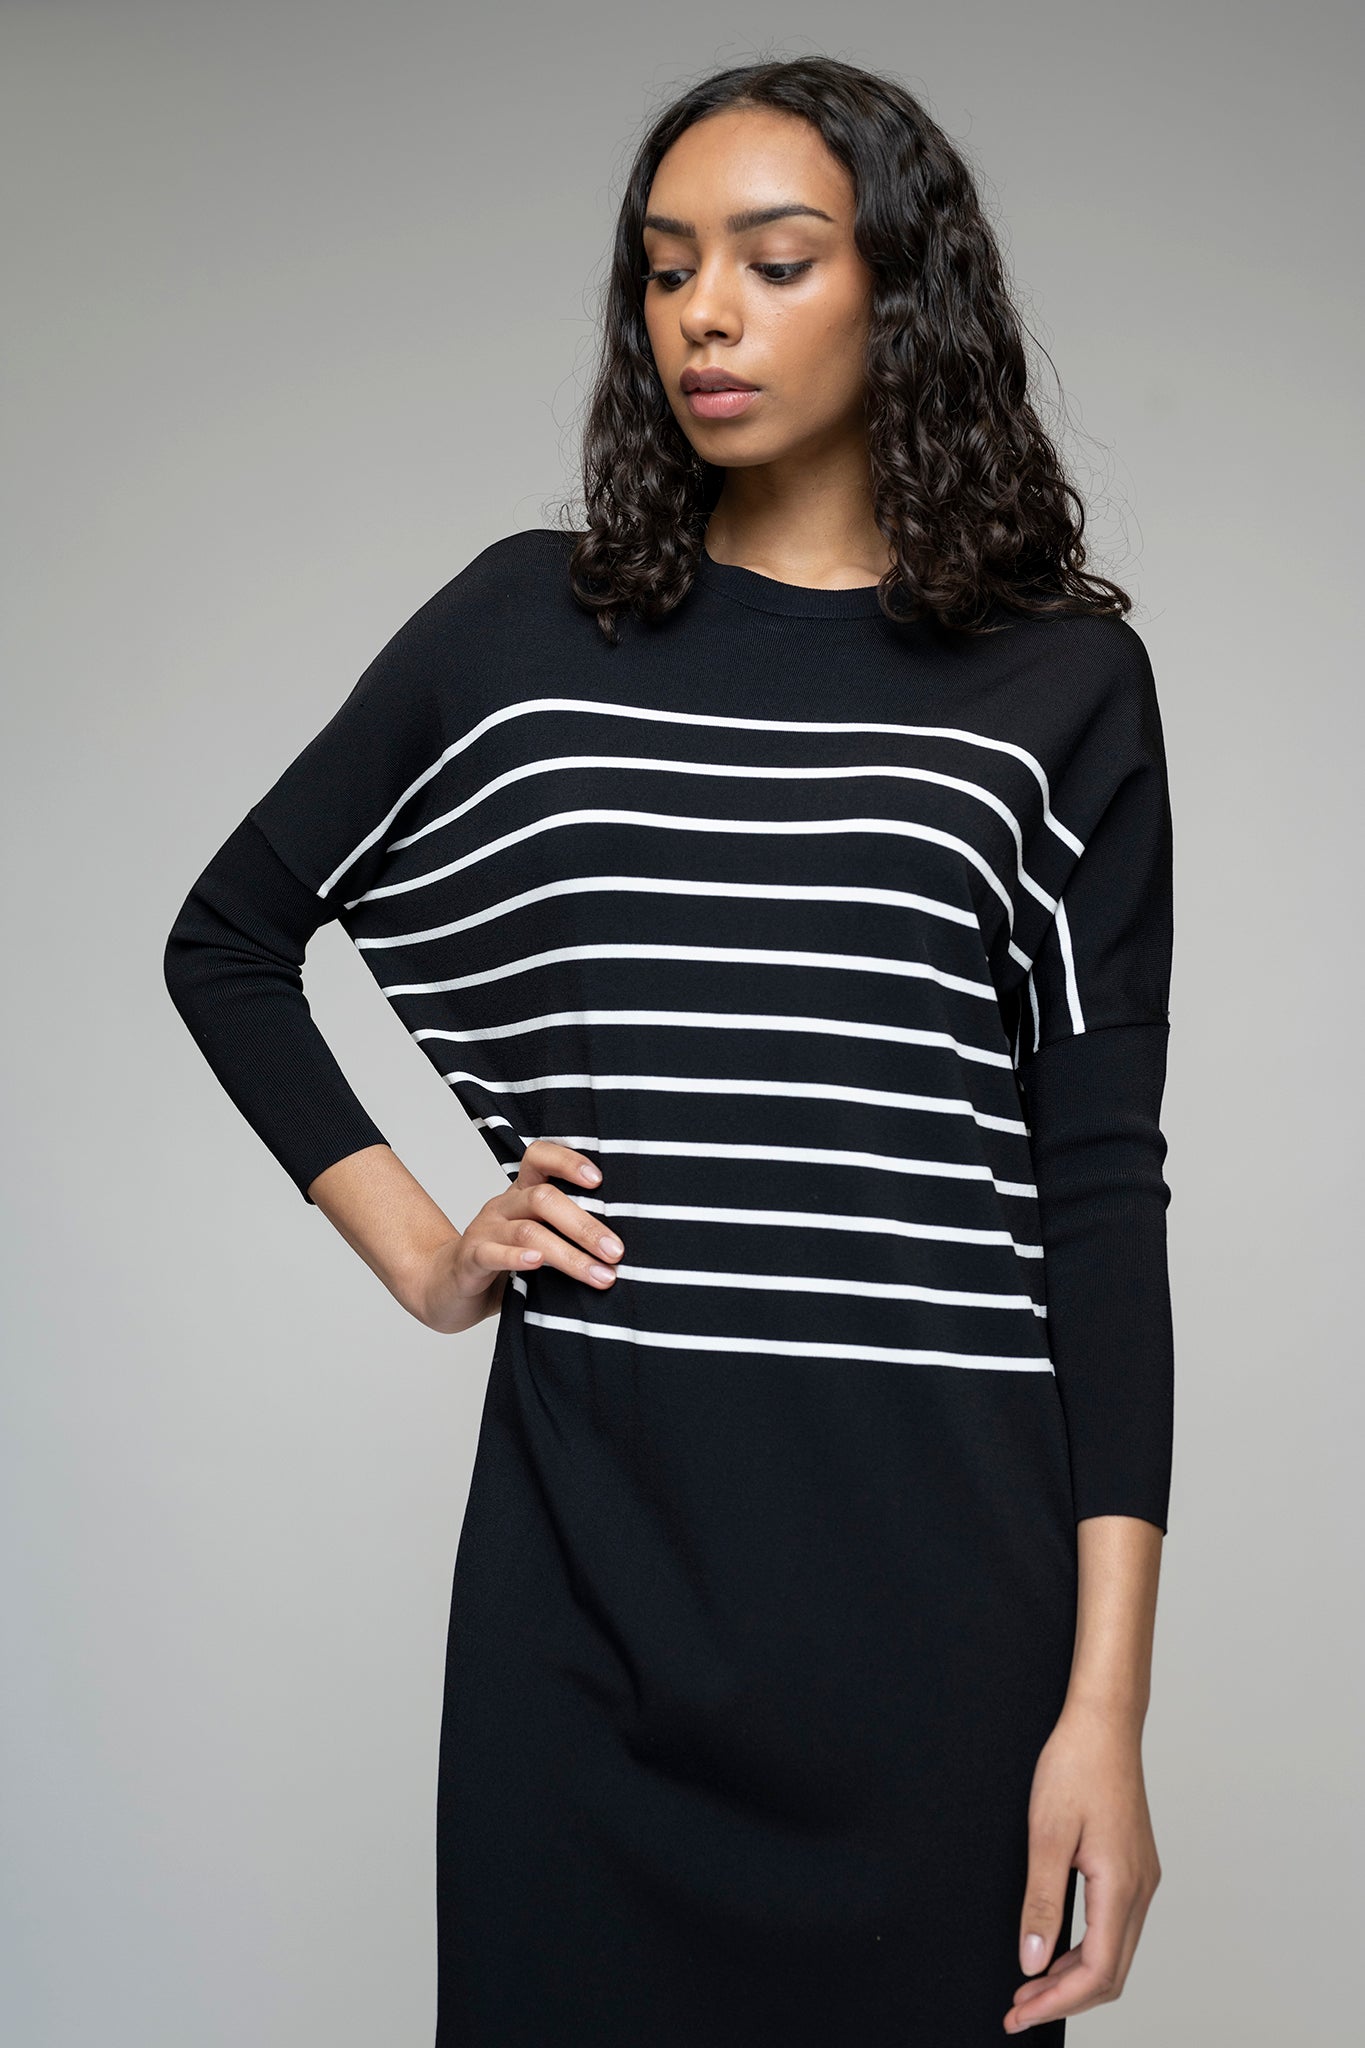 The Perilla Dress in Black/White Stripe